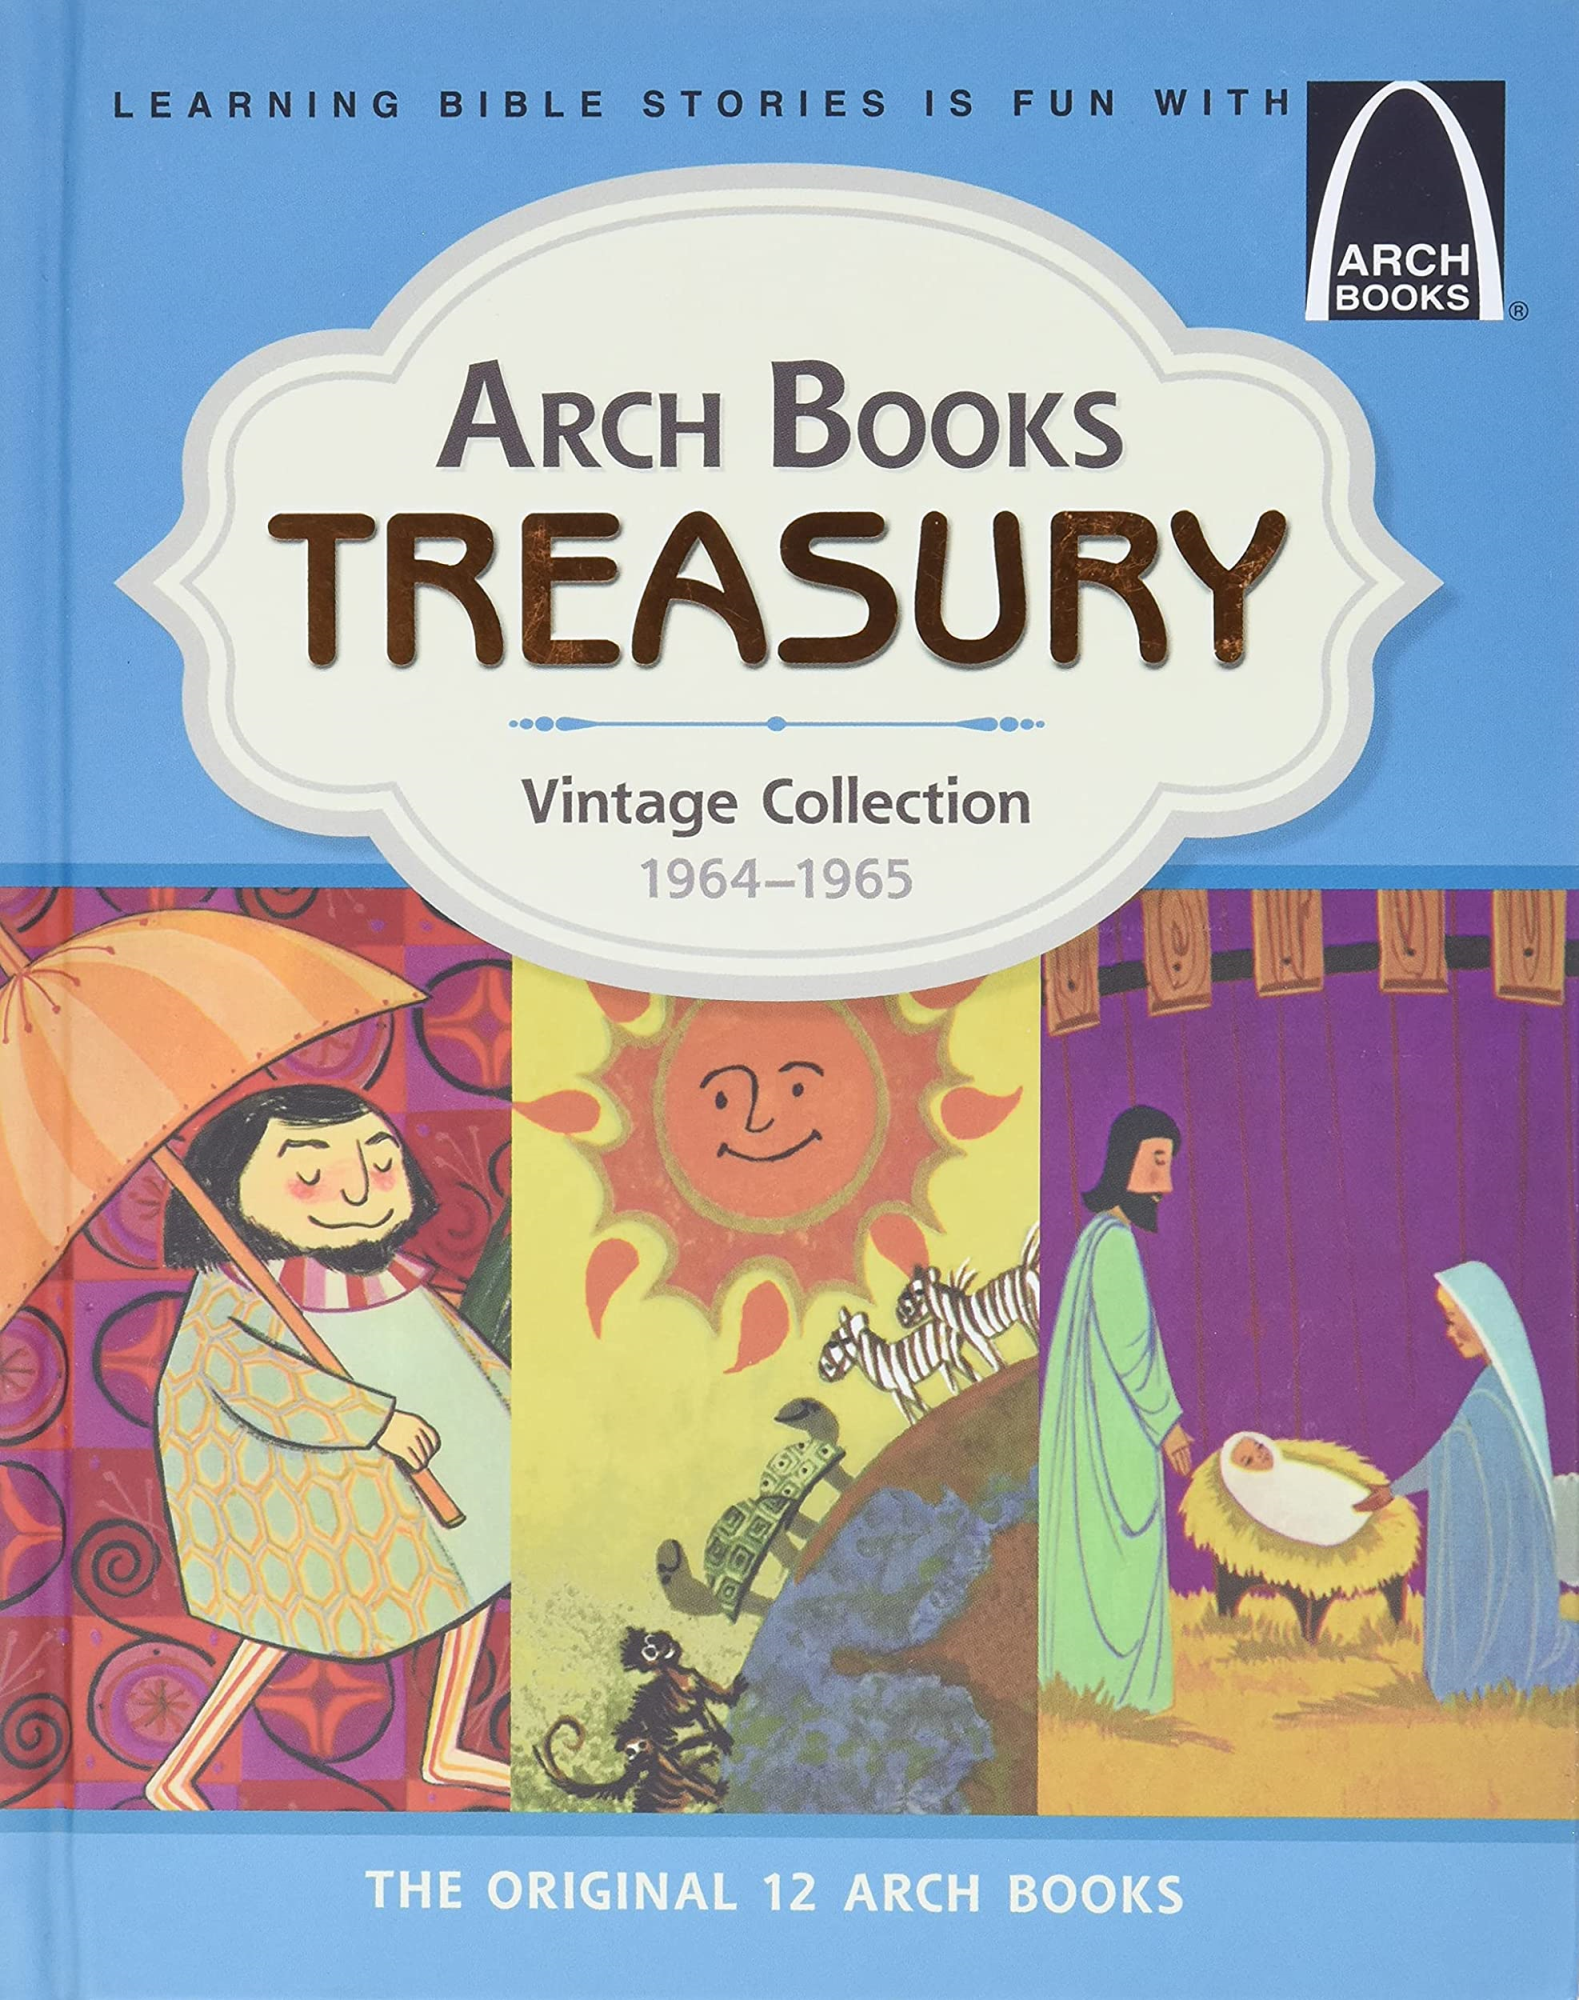 Libri Arch Books Treasury: Vintage Collection, 1964-1965 - The Original 12 Arch Books NUOVO SIGILLATO, EDIZIONE DEL 01/04/2020 SUBITO DISPONIBILE